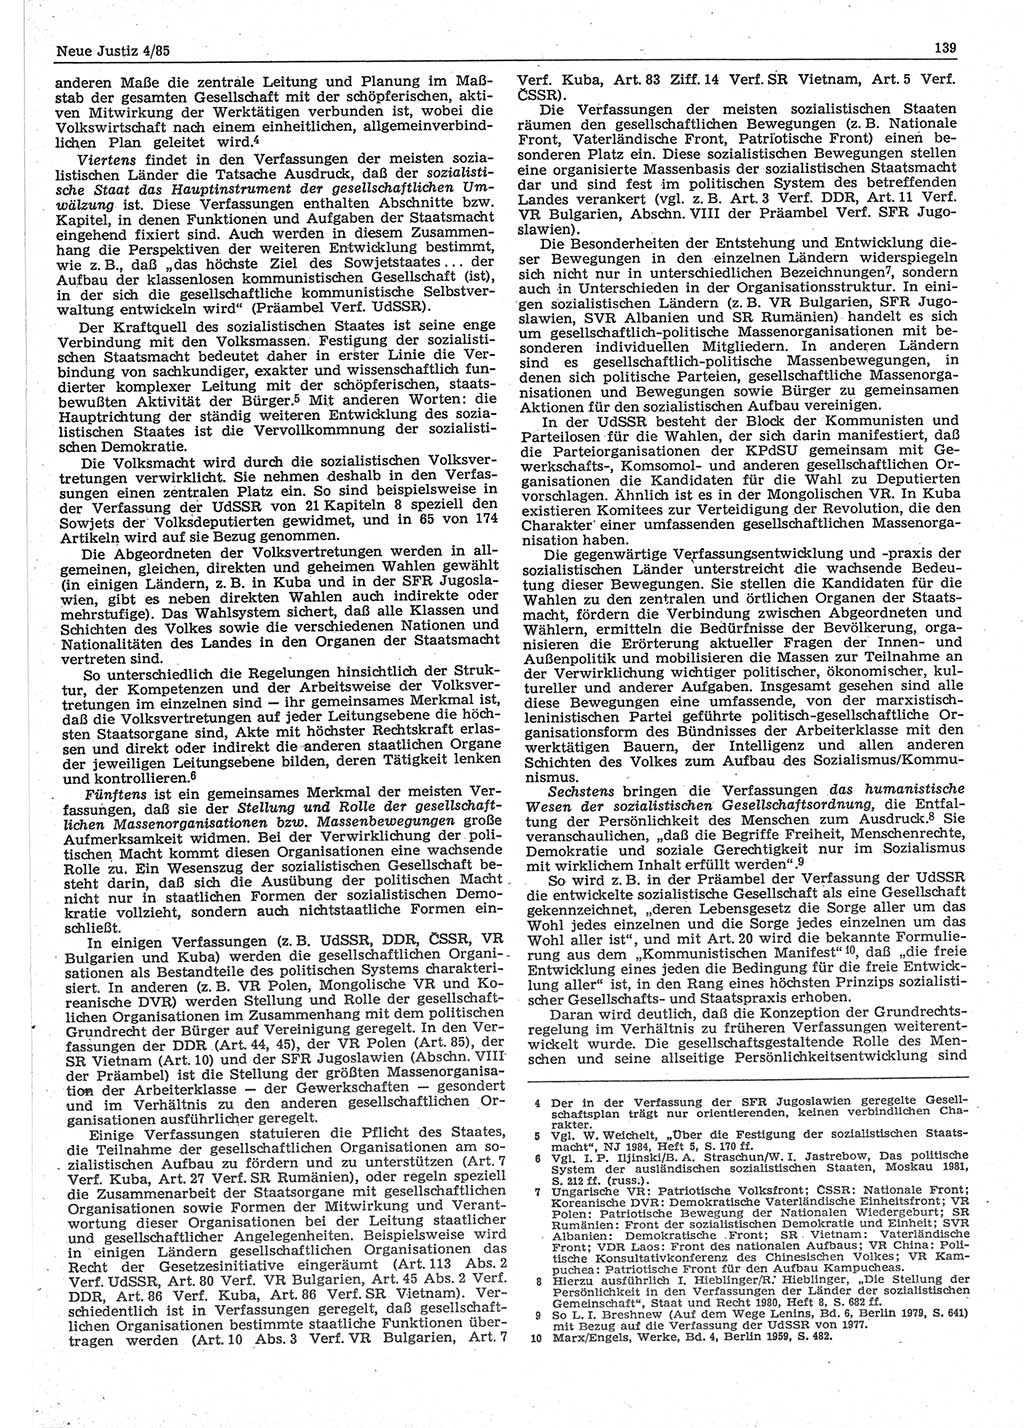 Neue Justiz (NJ), Zeitschrift für sozialistisches Recht und Gesetzlichkeit [Deutsche Demokratische Republik (DDR)], 39. Jahrgang 1985, Seite 139 (NJ DDR 1985, S. 139)